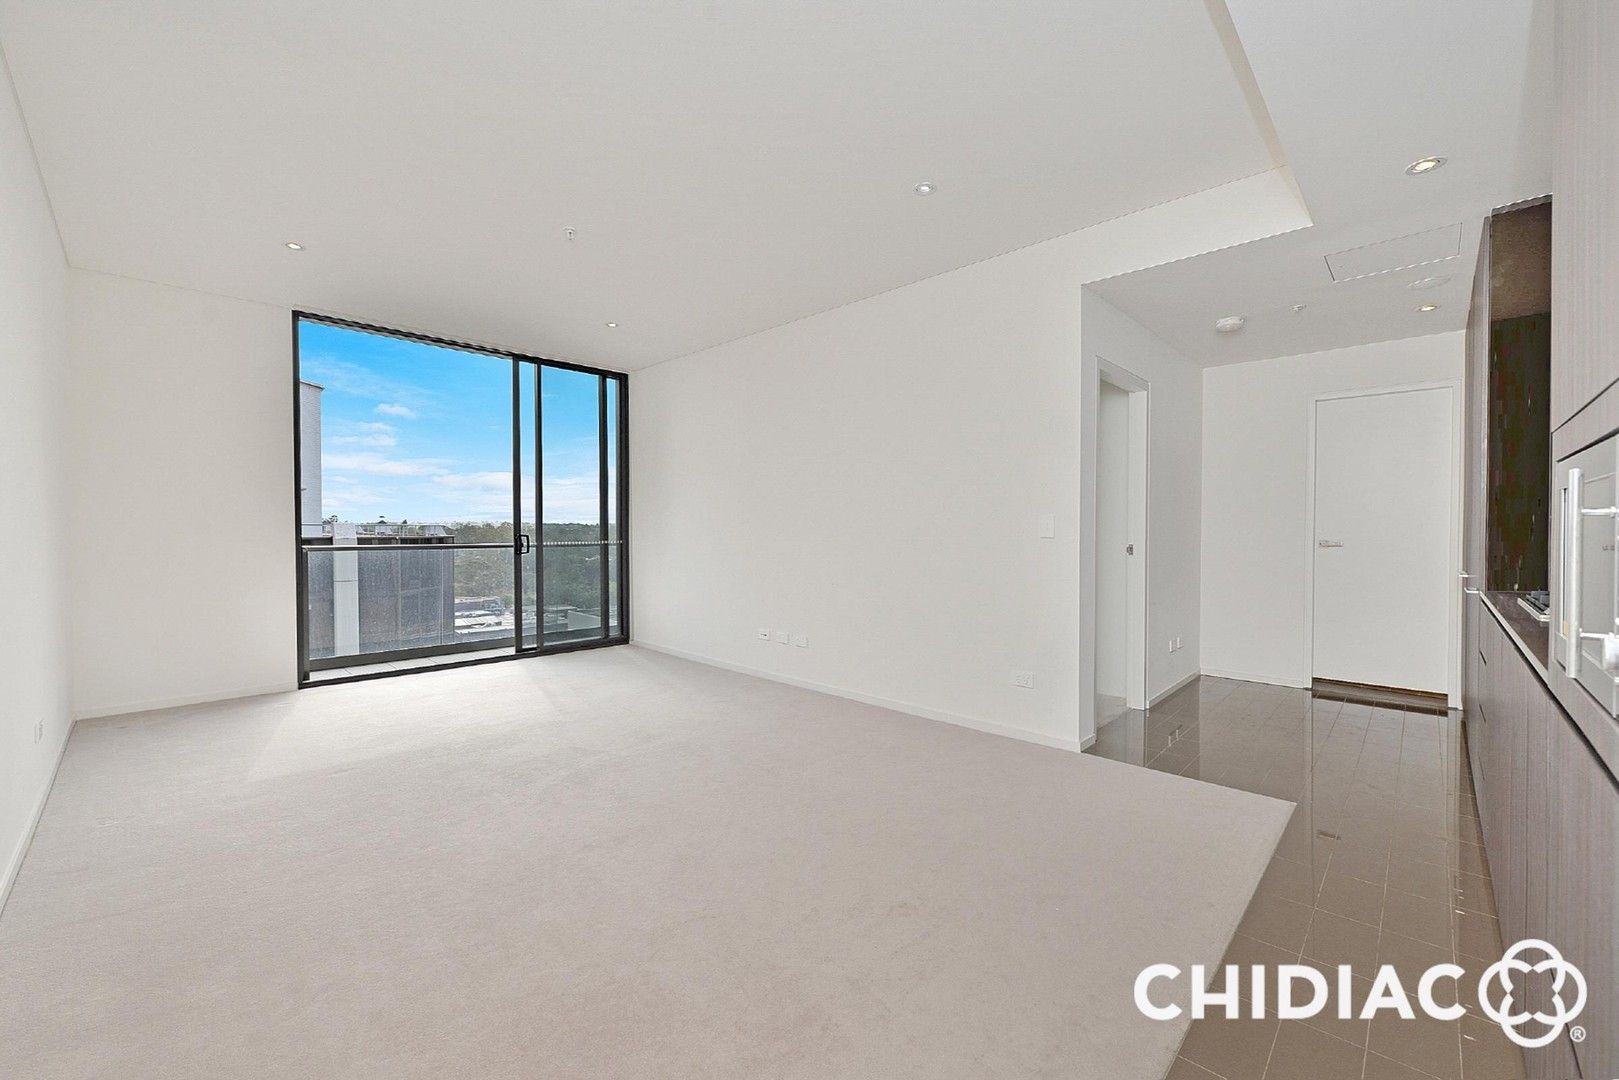 1 bedrooms Apartment / Unit / Flat in 1104/45 Macquarie Street PARRAMATTA NSW, 2150